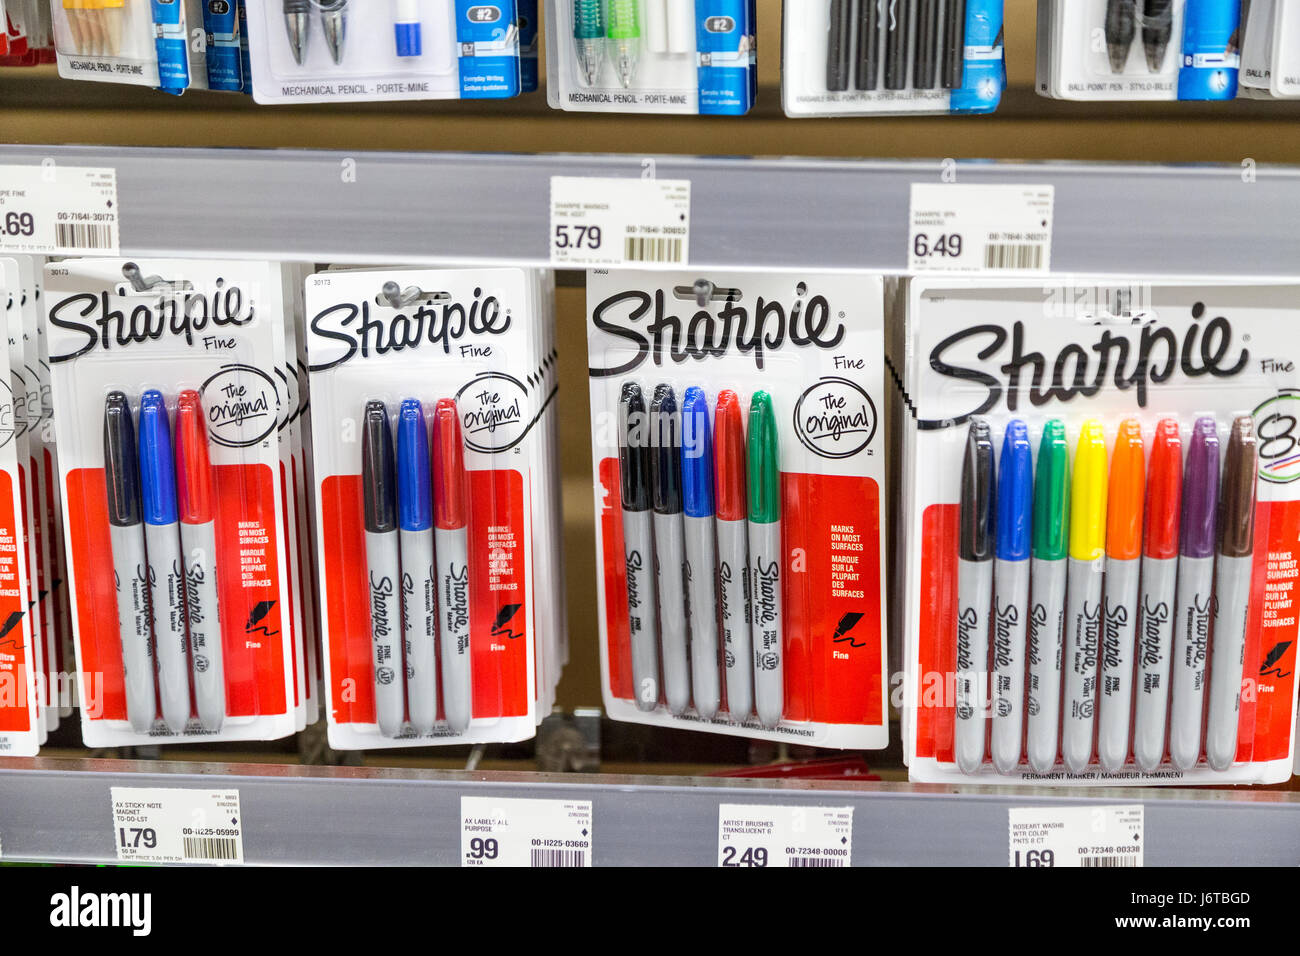 Paquets de Sharpie marqueurs permanents marque colorée sur l'écran dans un magasin Banque D'Images